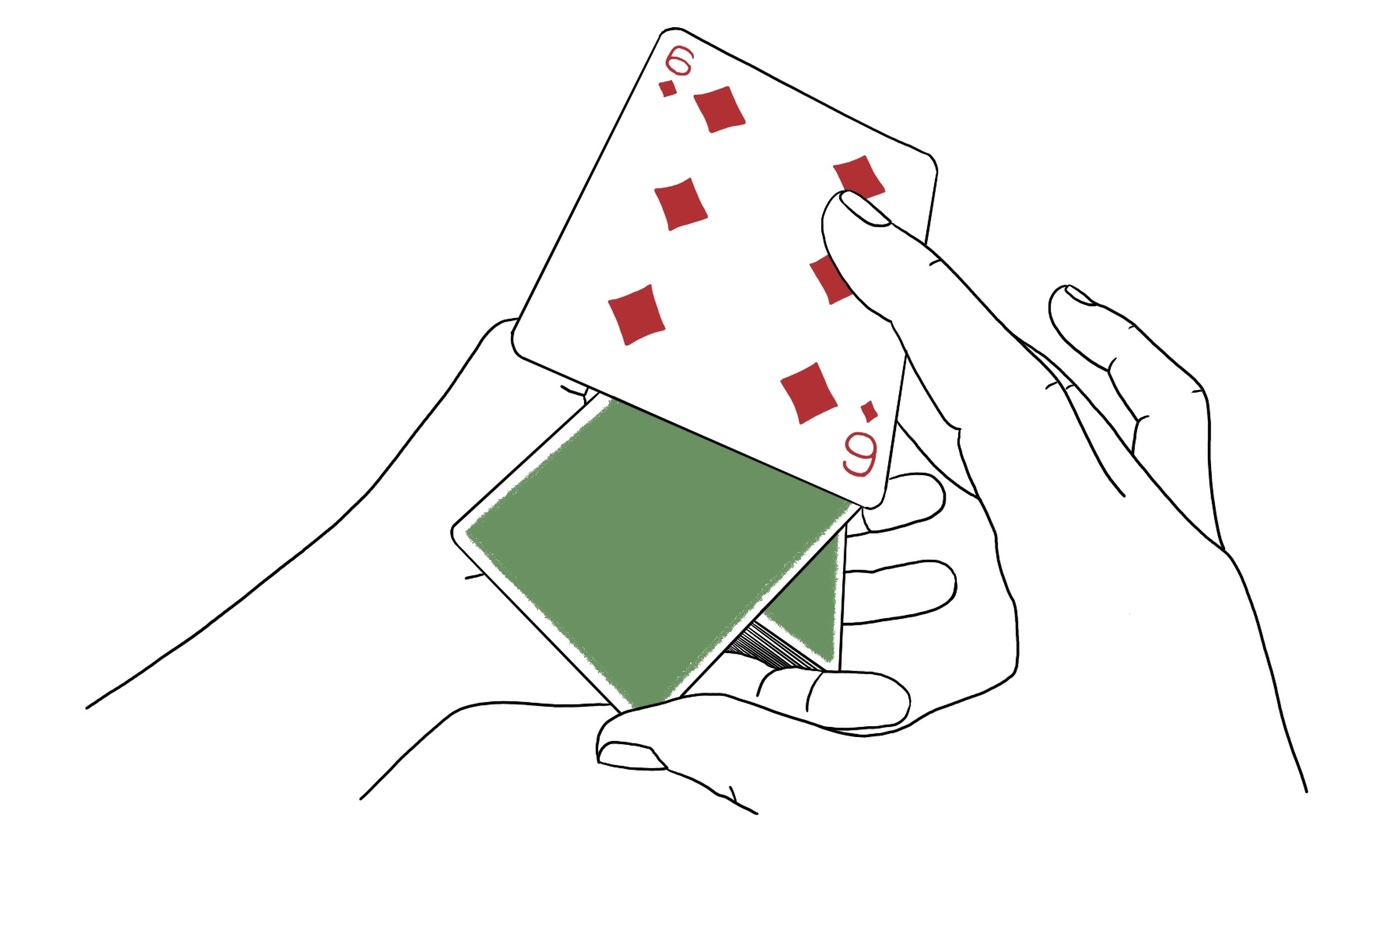 Sophie-Anne Vachon - Dessin technique de mains manipulant des cartes